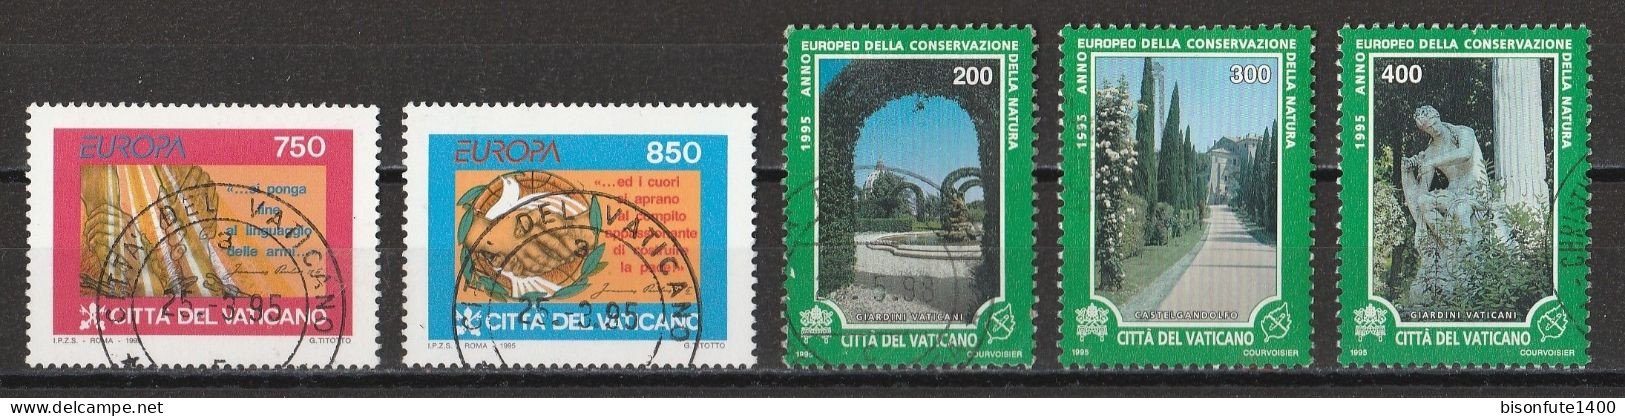 Vatican 1995 : Timbres Yvert & Tellier N° 998 - 999 - 1007 - 1008 - 1009 - 1011 Et 1013 Oblitérés - Gebruikt